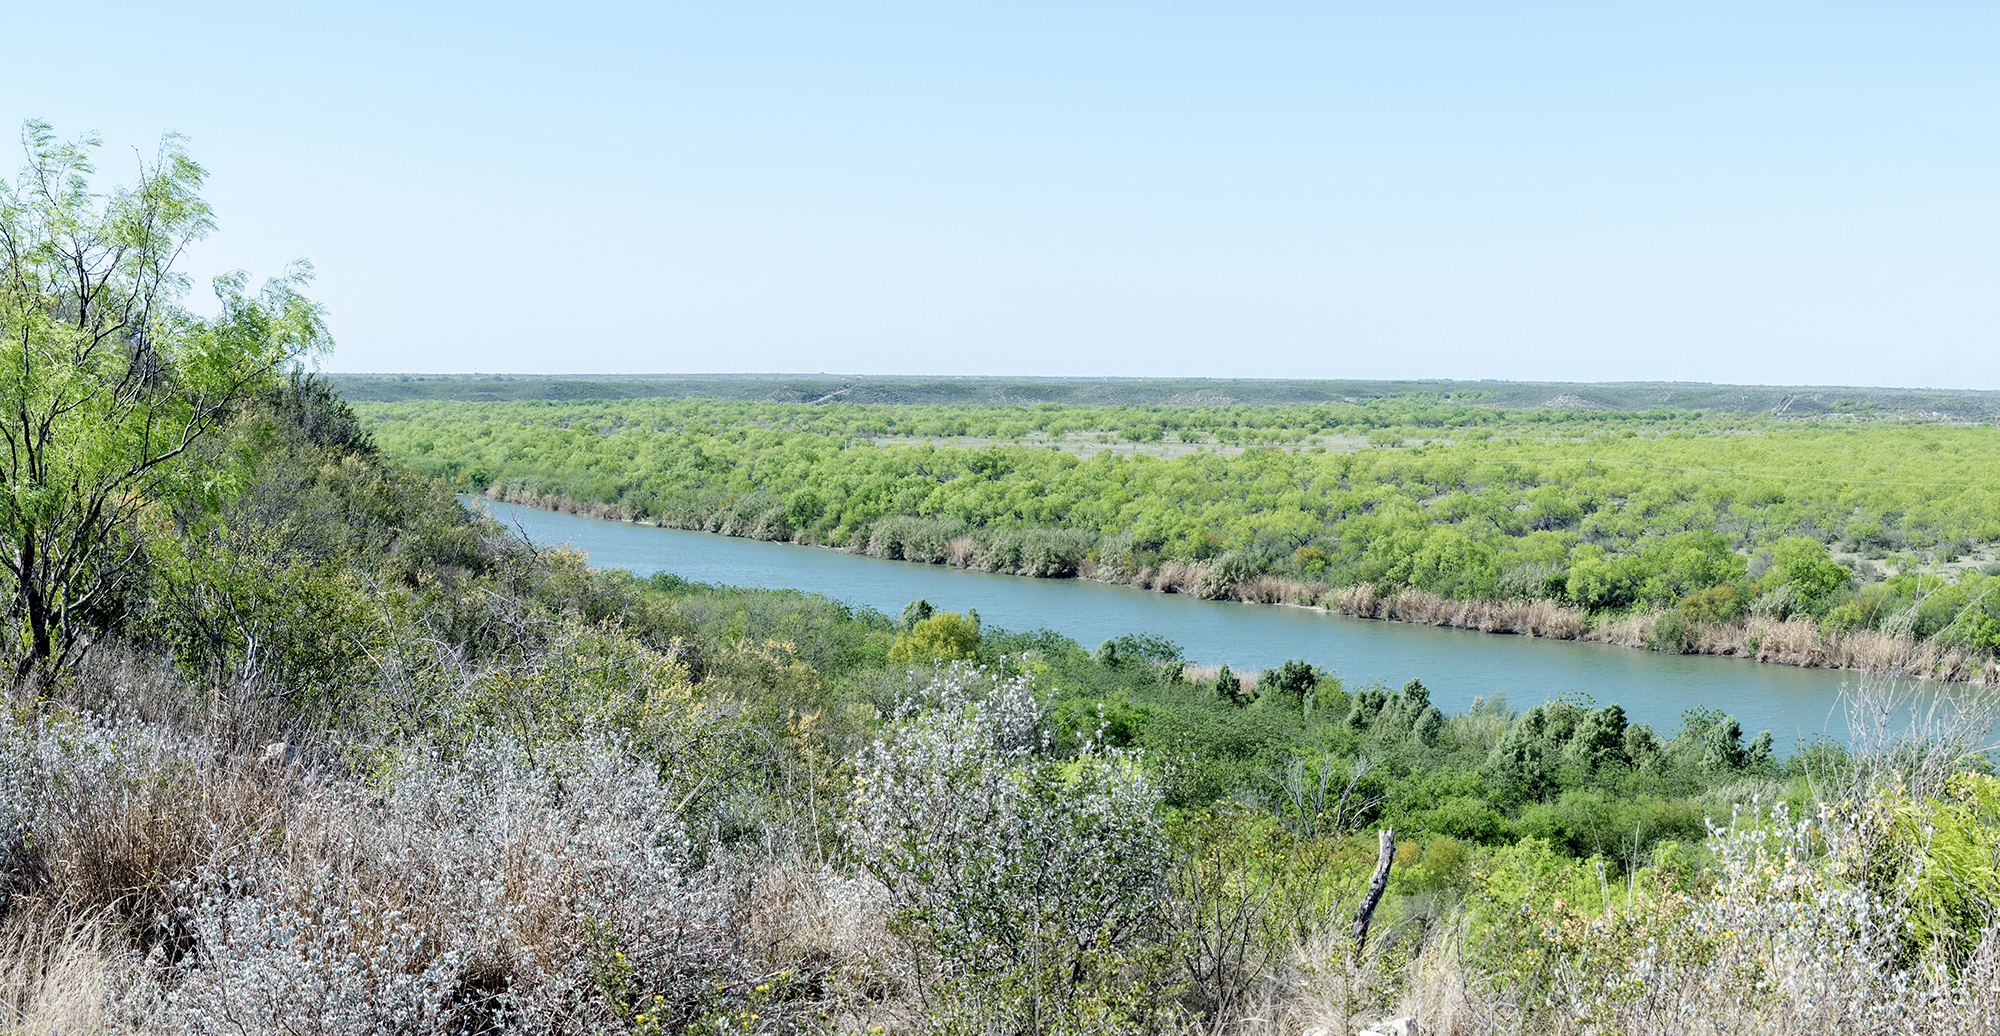 Rio Grande River in spring